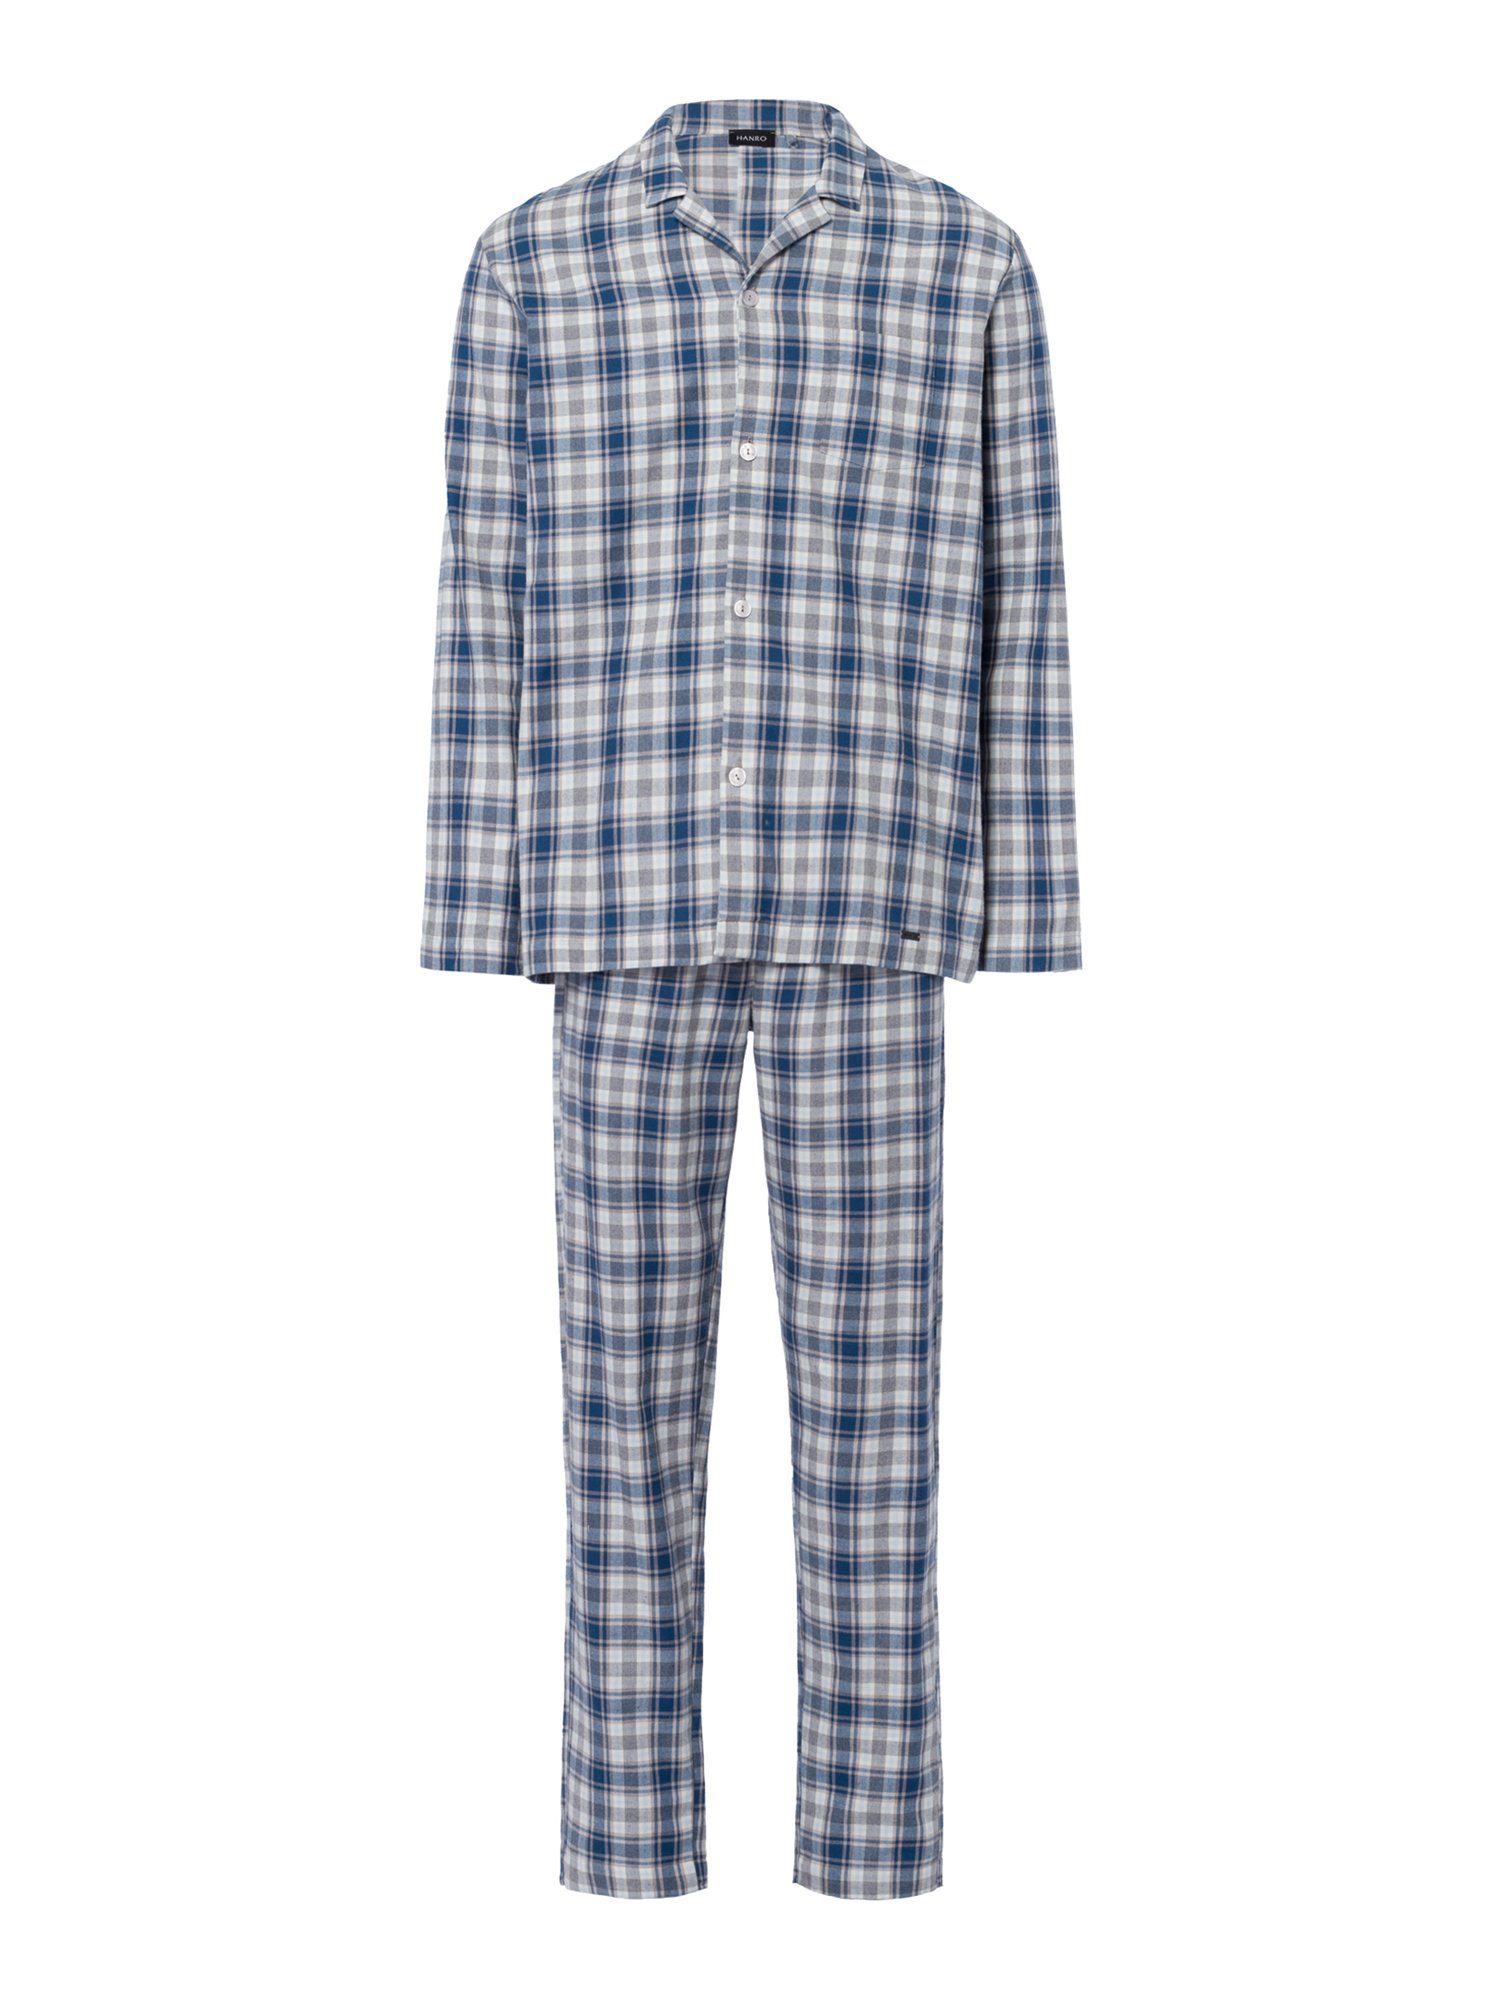 Pyjama Comfort Cozy cozy check Hanro